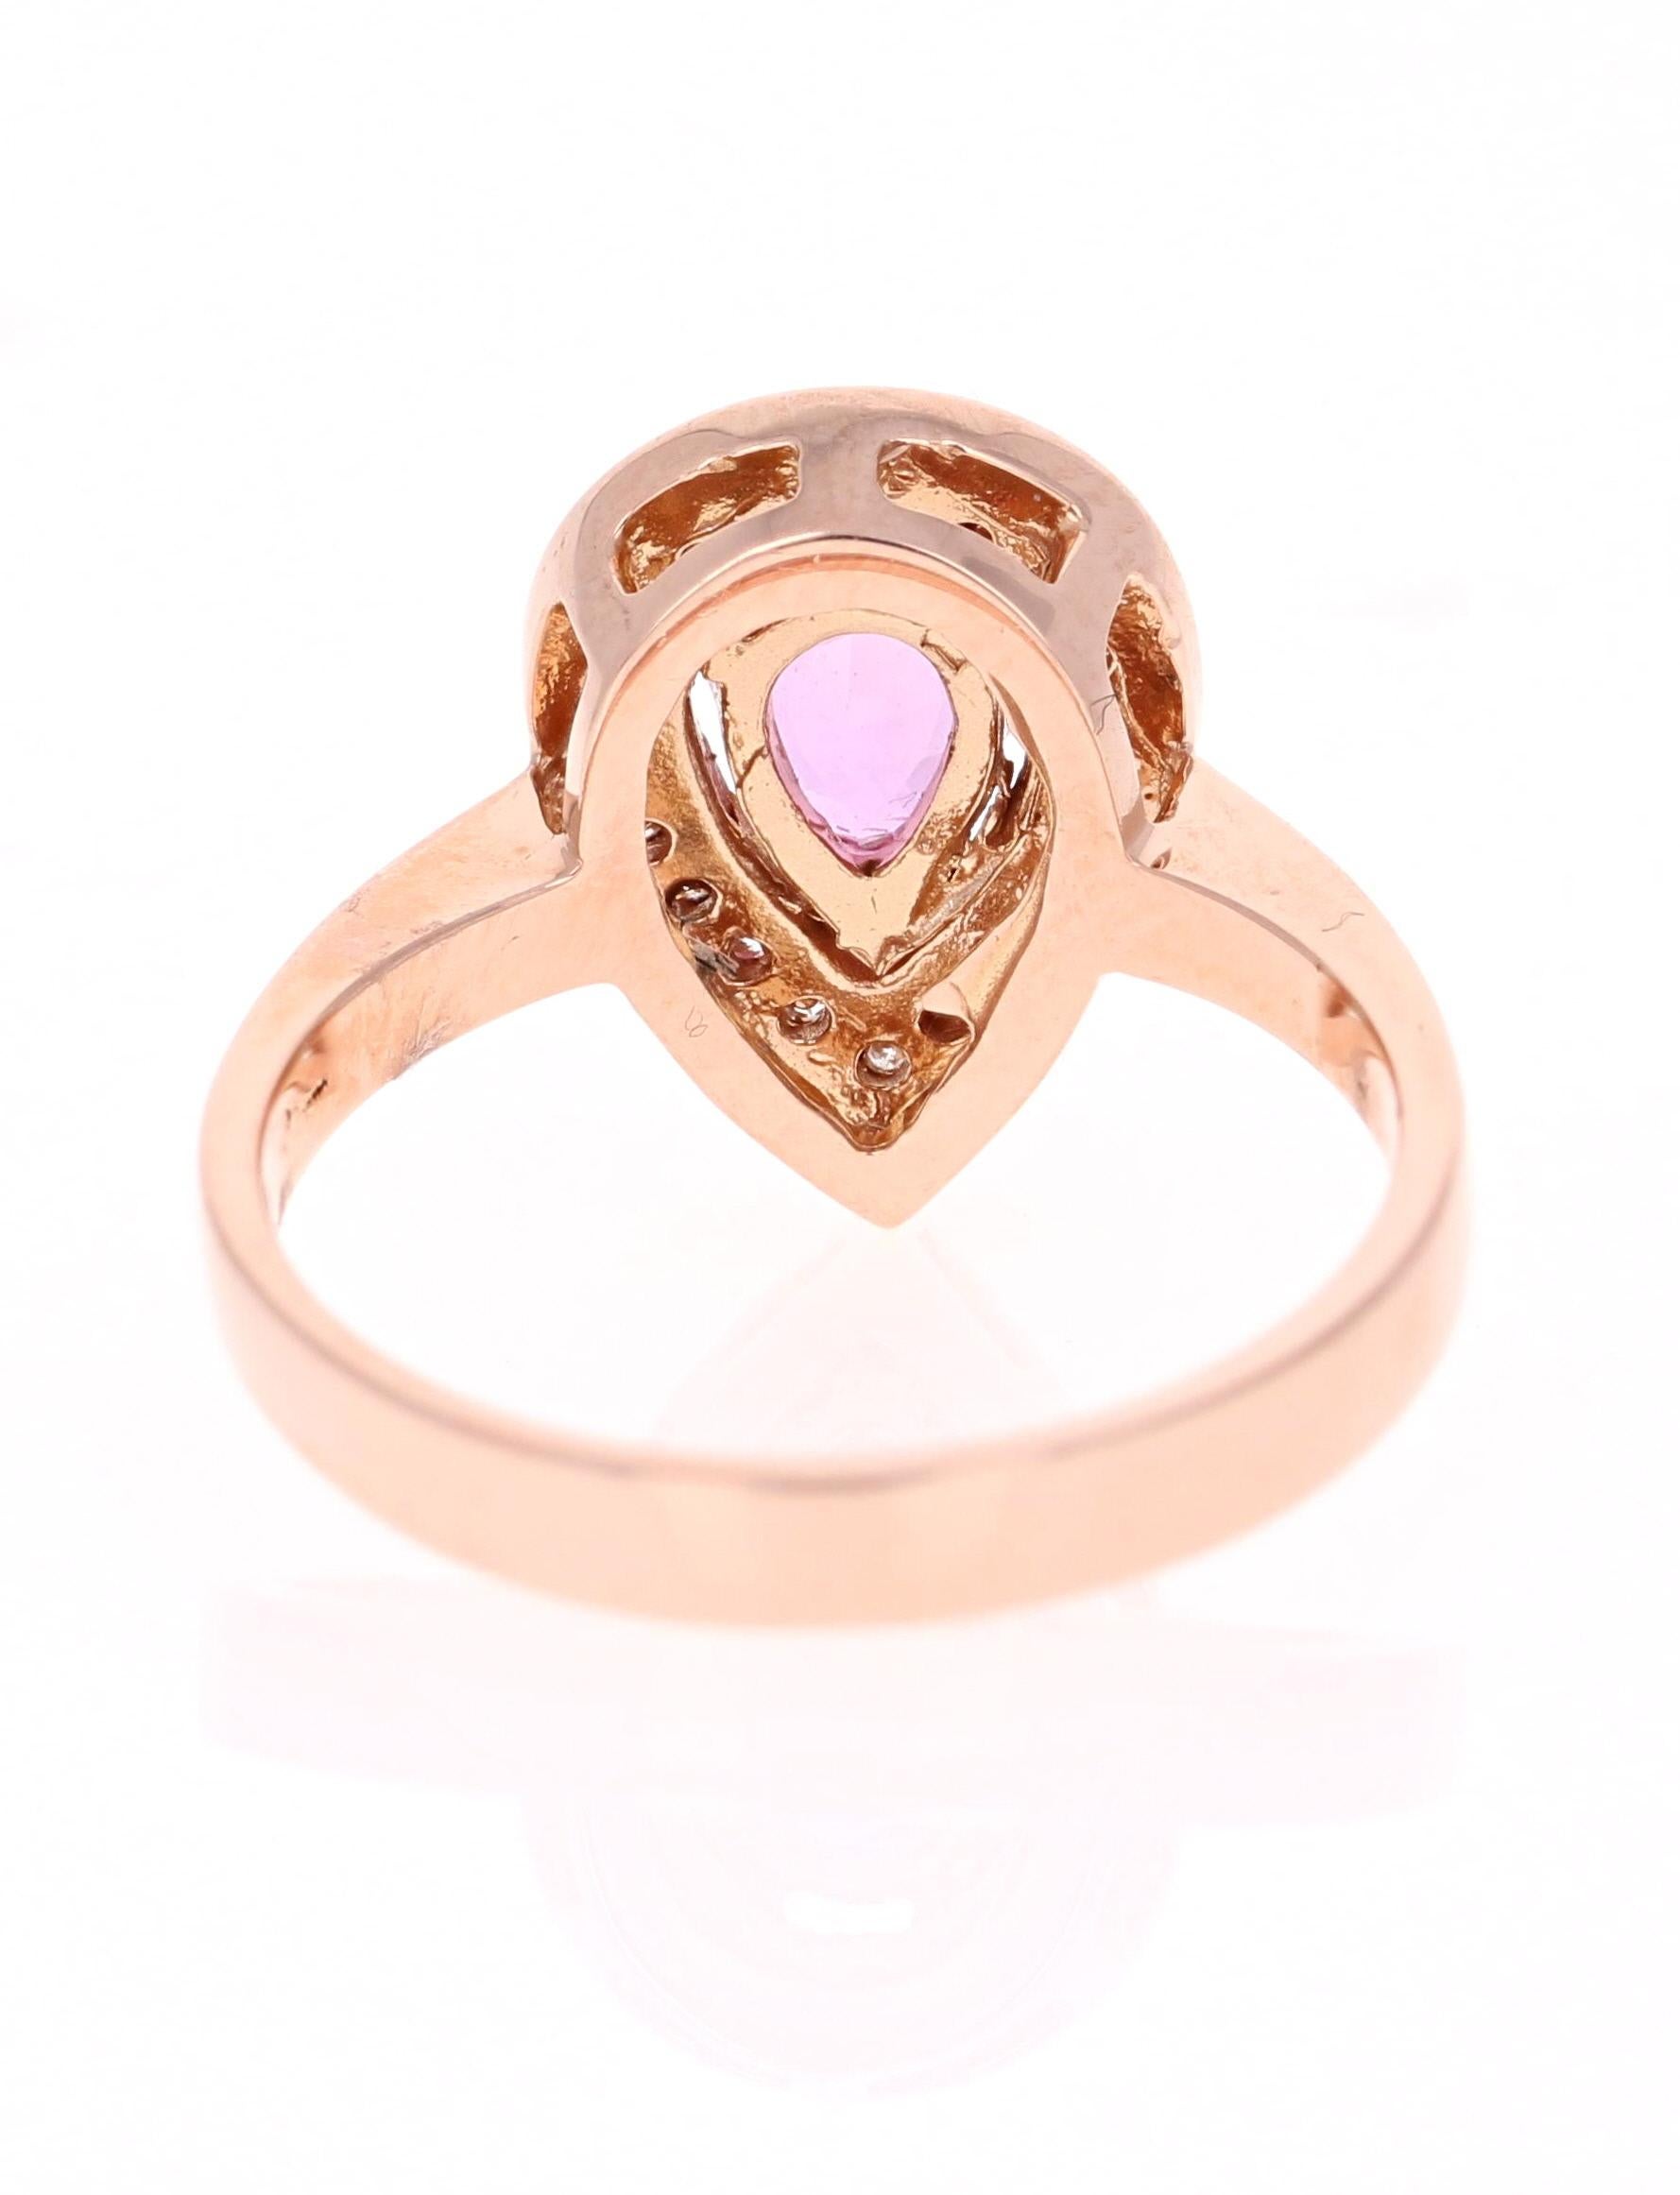 Pear Cut 1.47 Carat Pink Sapphire Diamond 14 Karat Rose Gold Engagement Ring